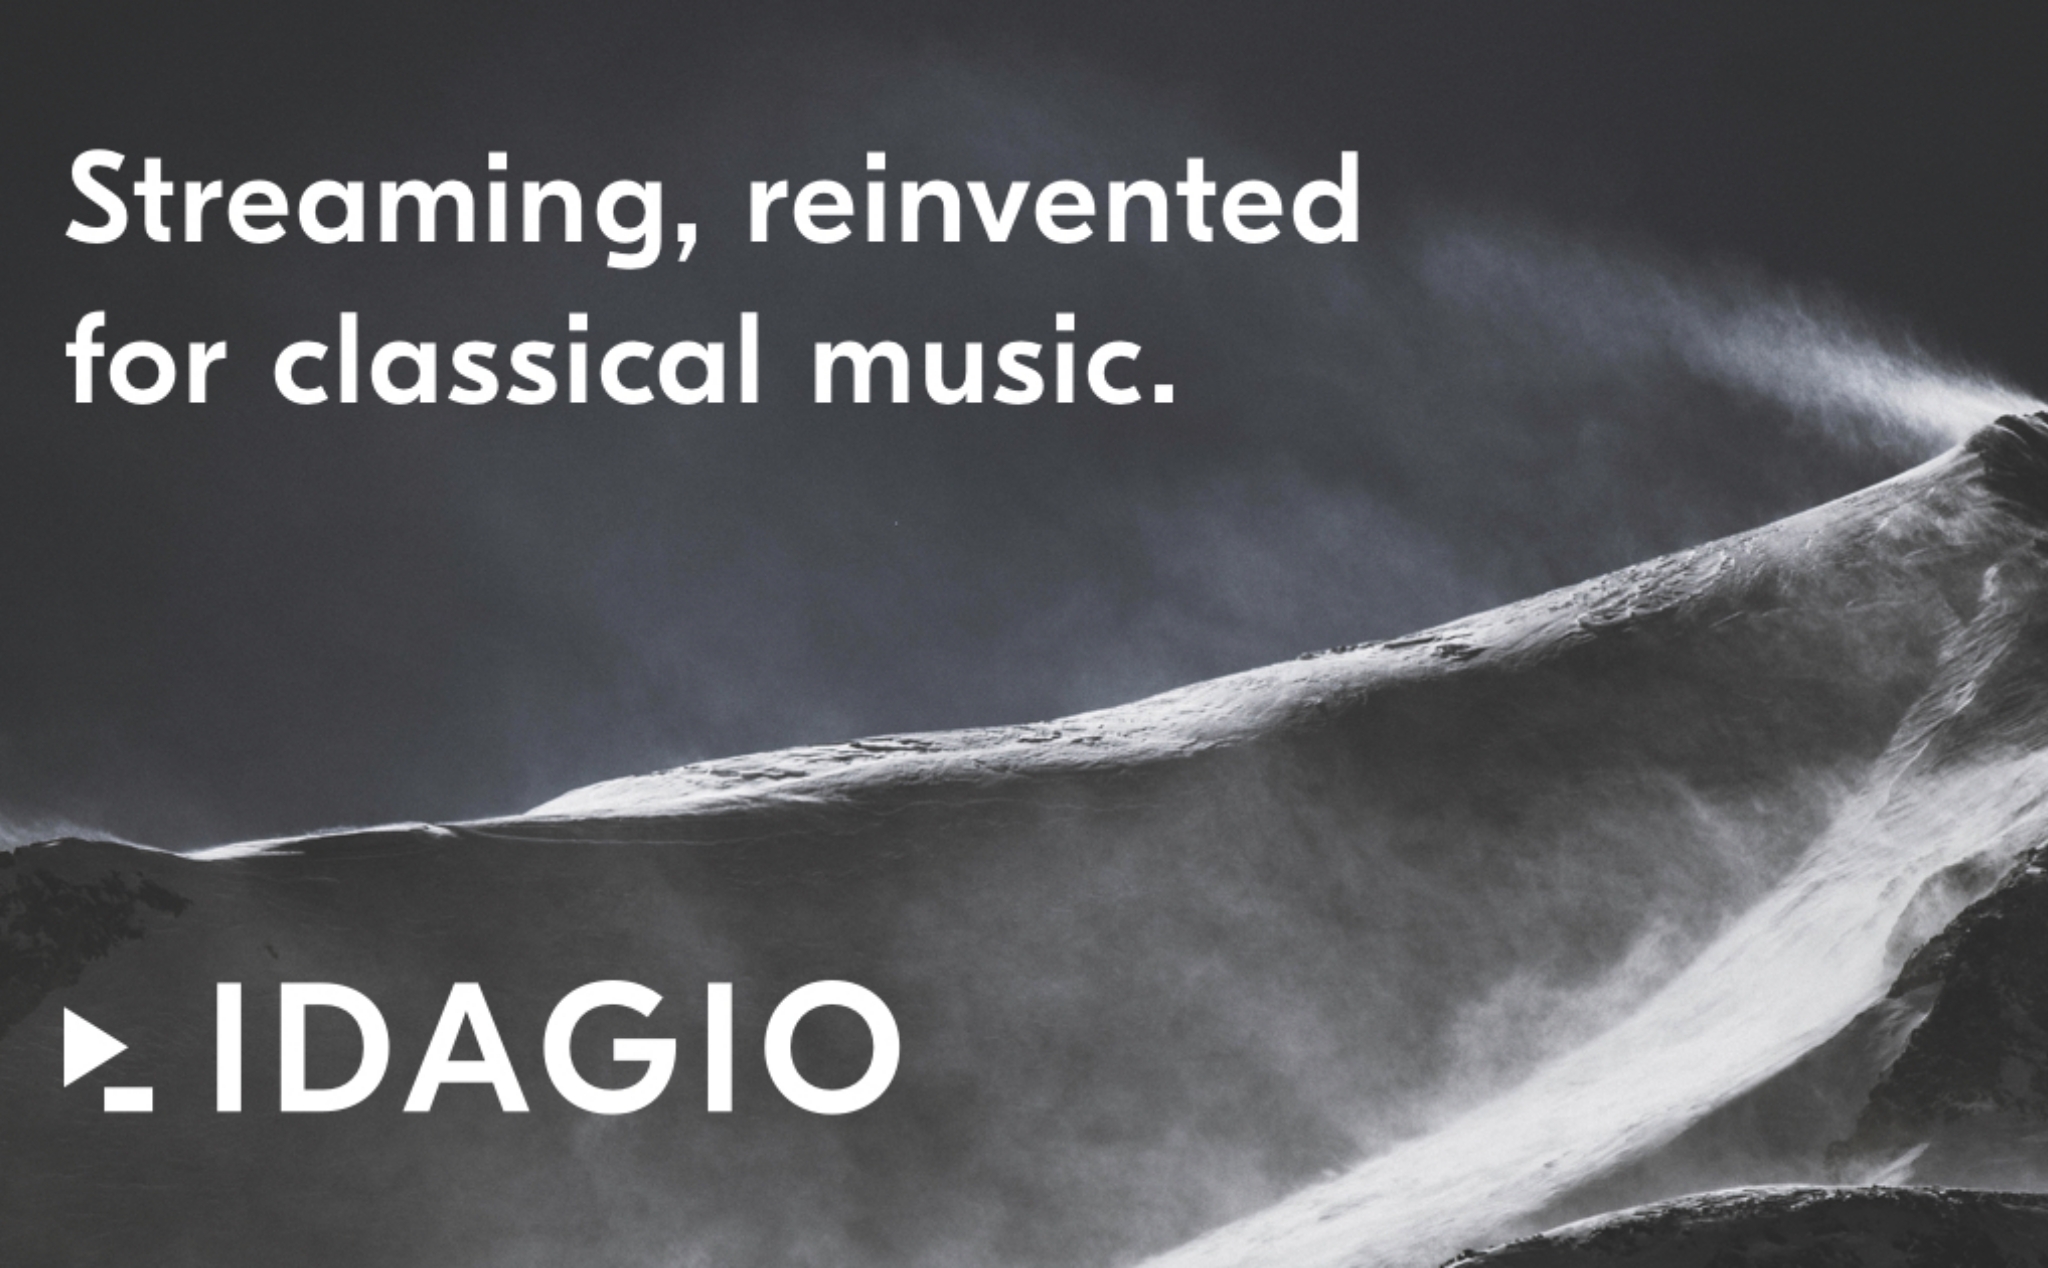 Idagio, dịch vụ stream nhạc chất lượng cao tốt nhất dành cho những người yêu nhạc cổ điển